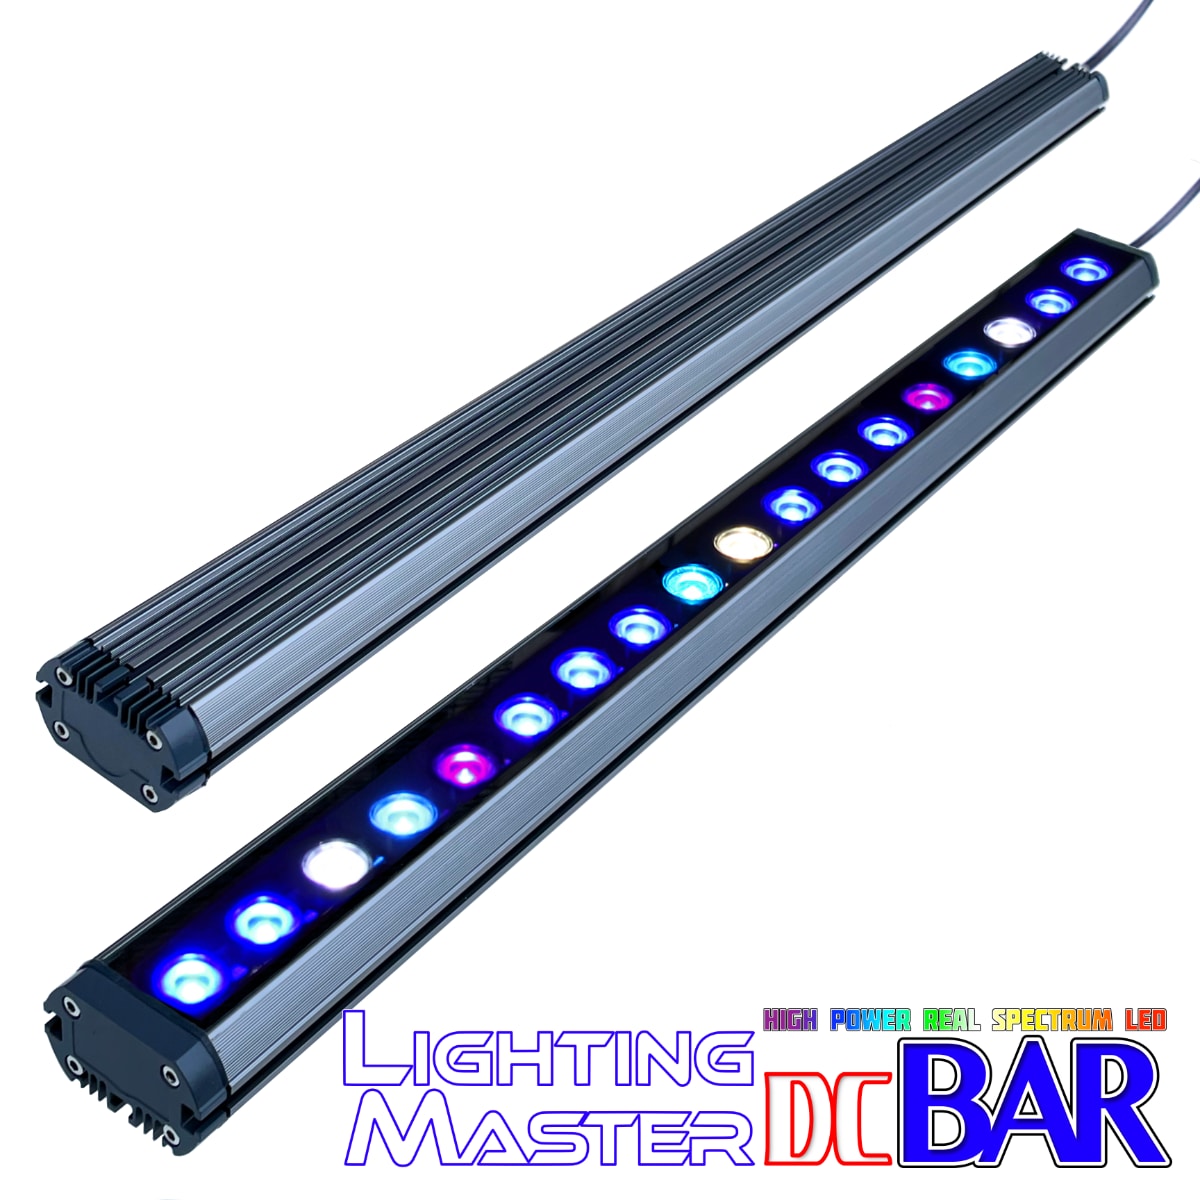 30,000K フルスペクトル 60〜90cm水槽対応 超高輝度特殊デュアルチップLED搭載ランプ Lighting Master DC Bar【コーラルブルー】本体色:グレーメタリック